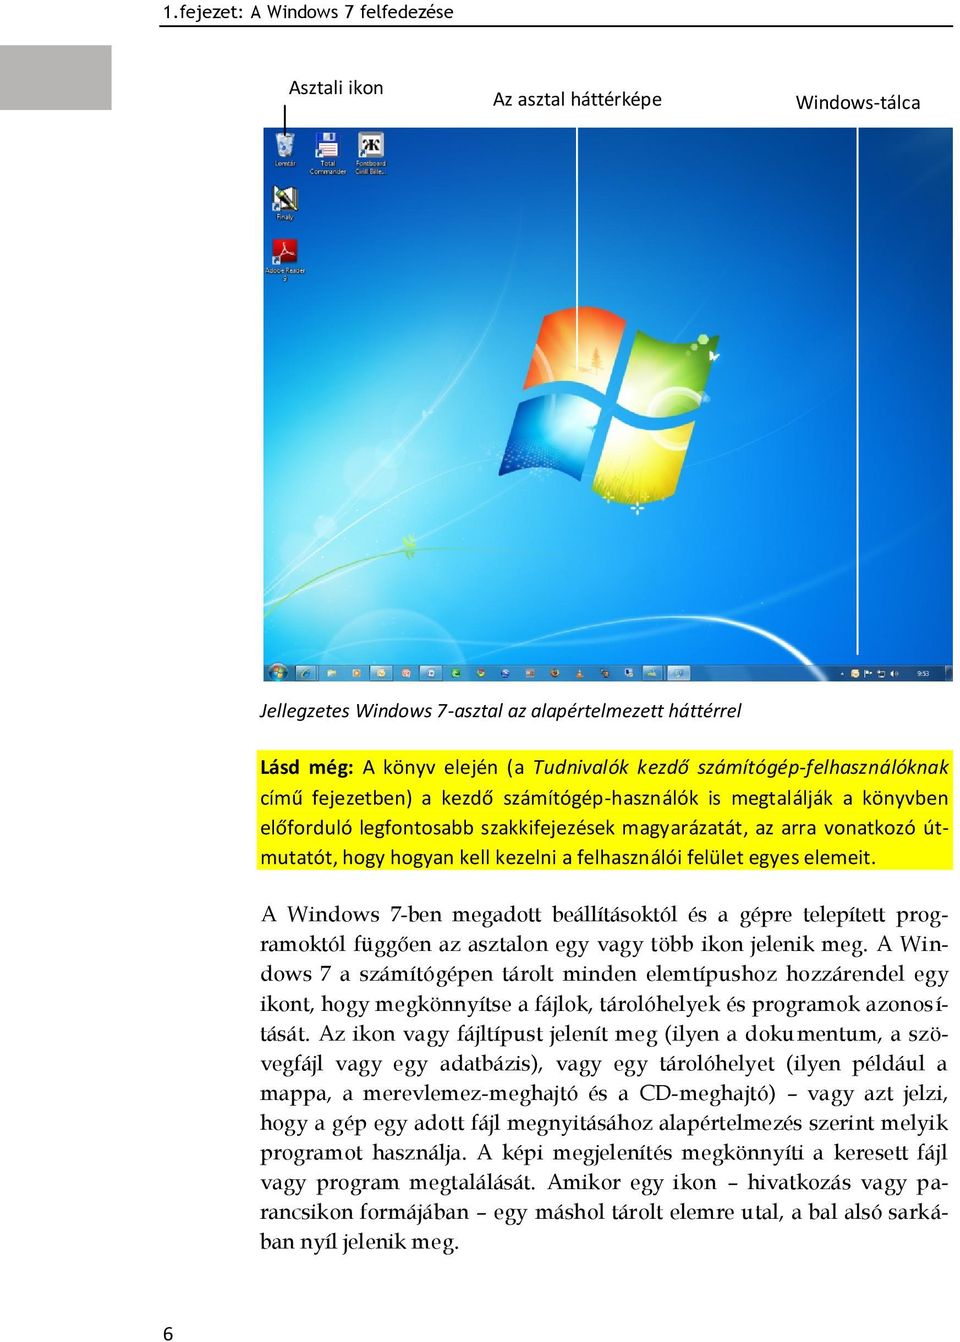 kezelni a felhasználói felület egyes elemeit. A Windows 7-ben megadott beállításoktól és a gépre telepített programoktól függően az asztalon egy vagy több ikon jelenik meg.